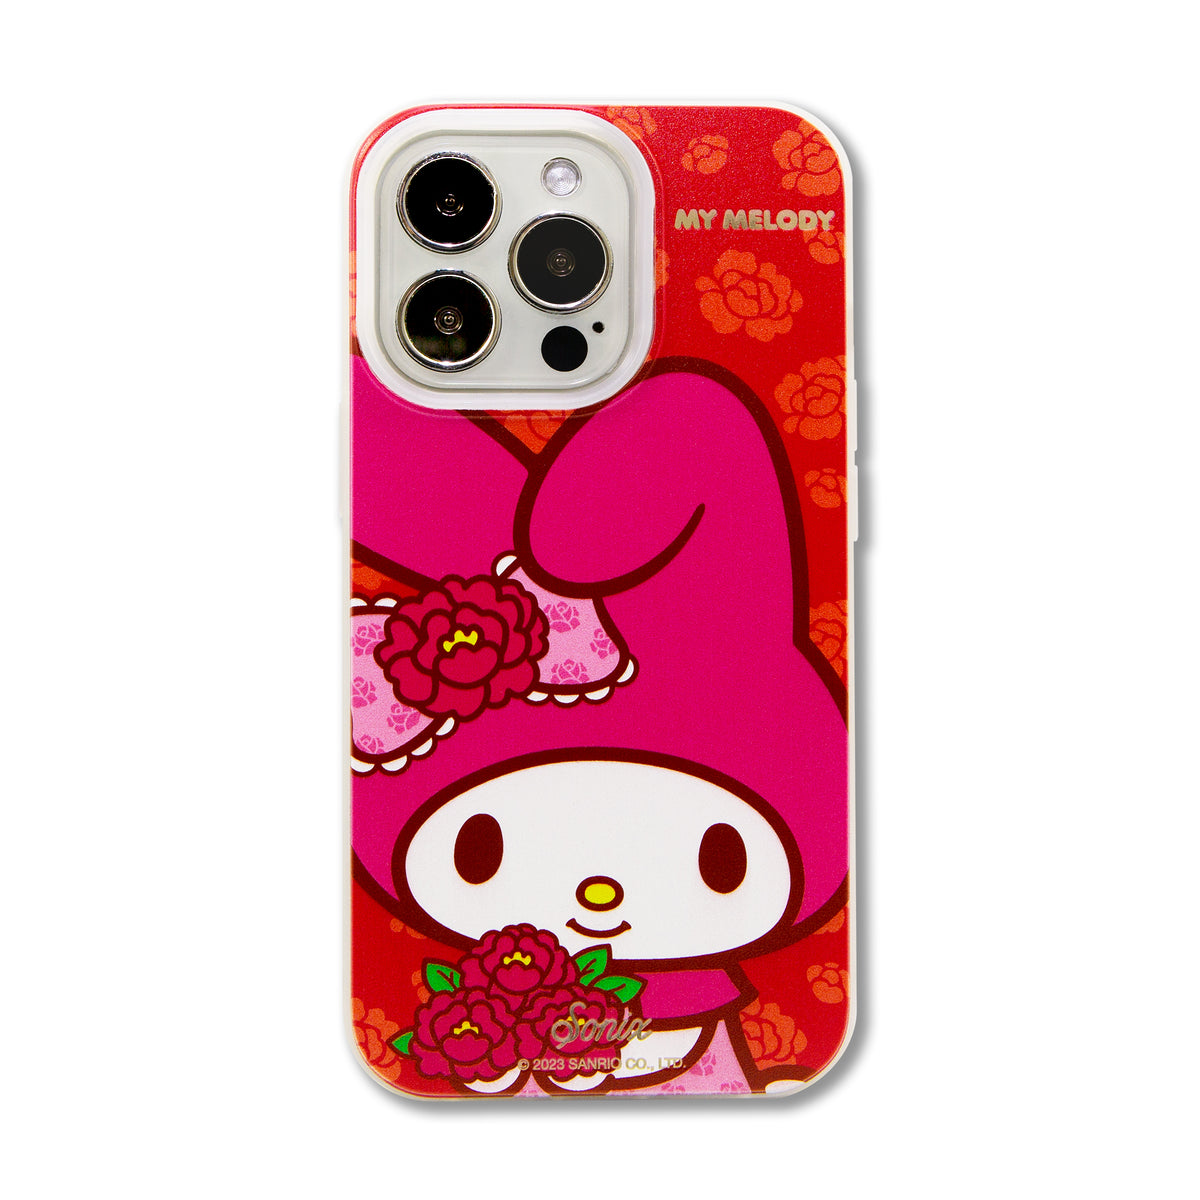 Sanrio iPhone Case  Melody hello kitty, Cute cases, Sanrio